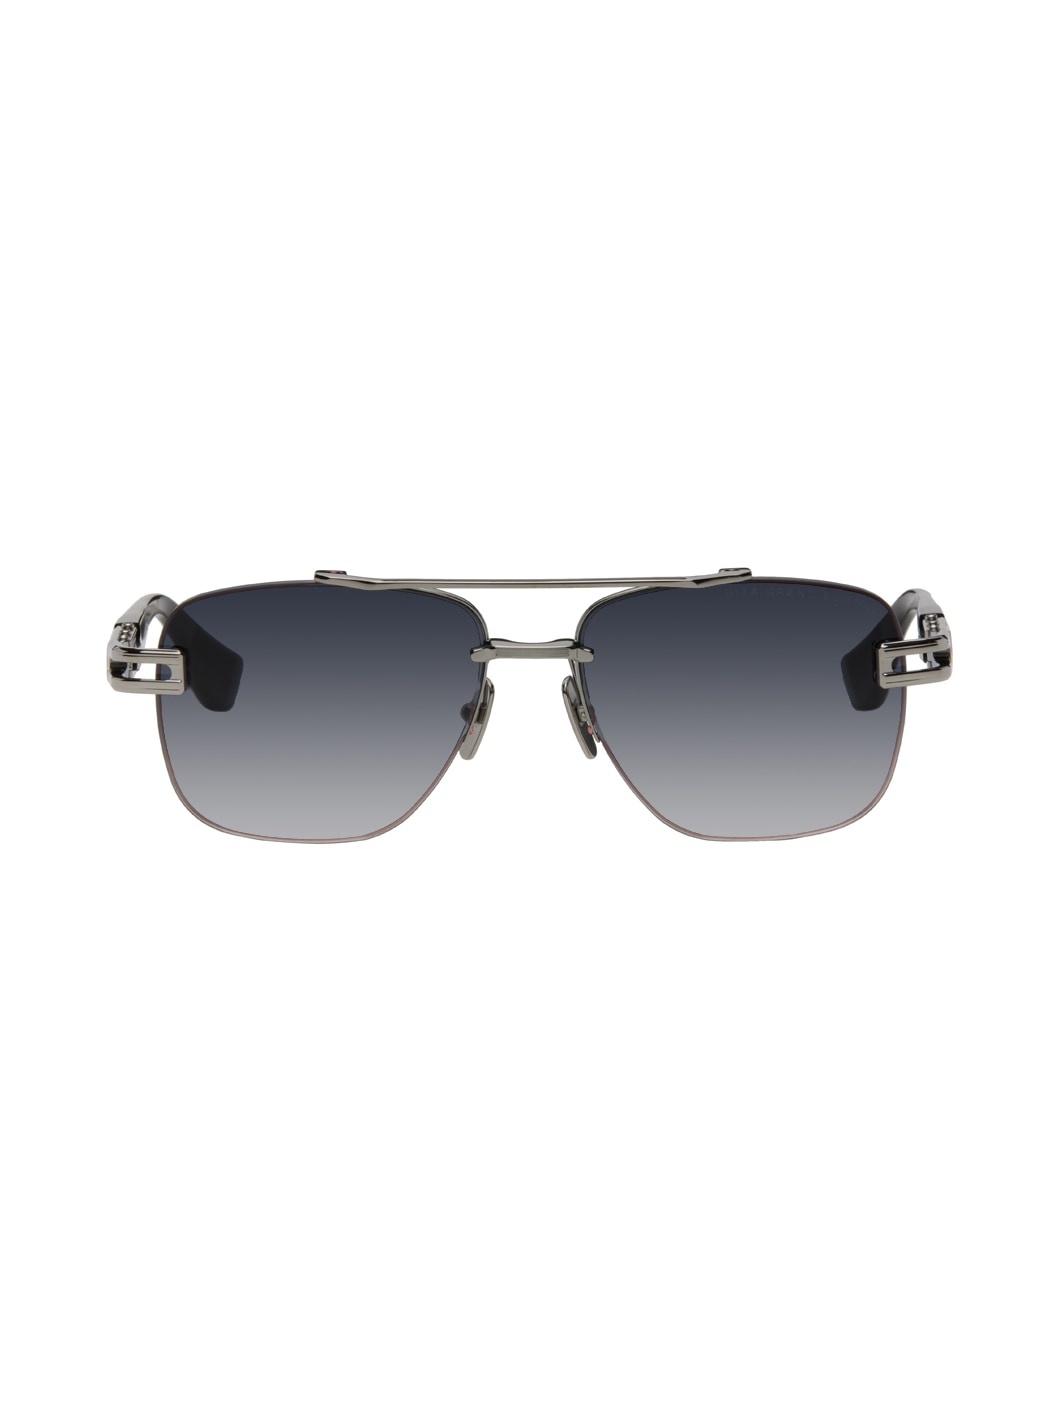 Silver Grand-Evo One Sunglasses - 1